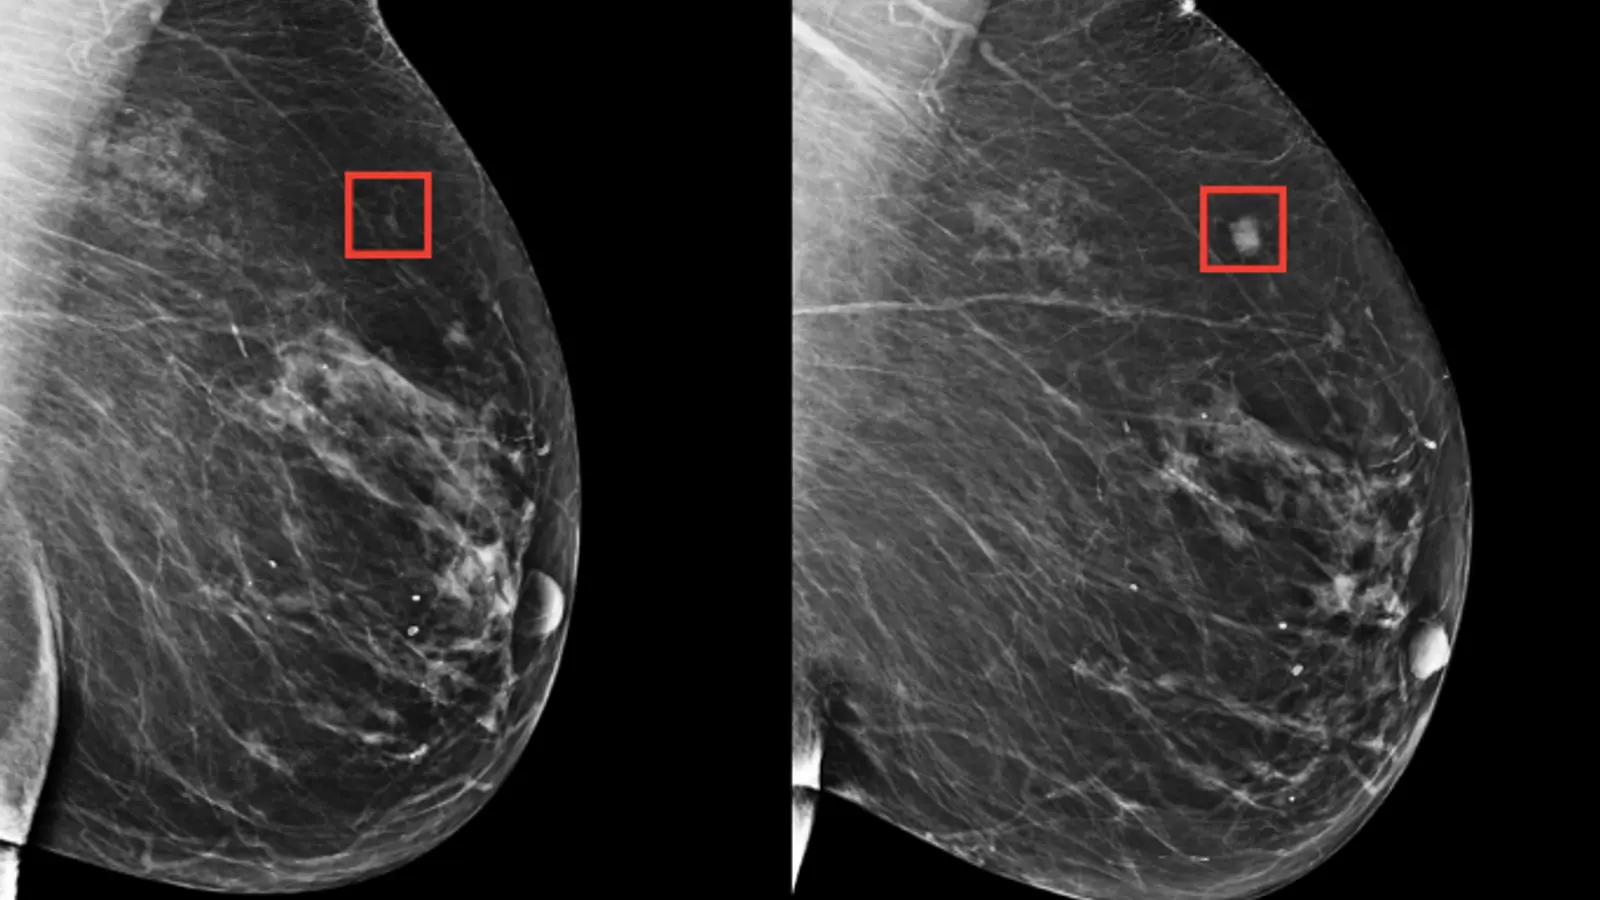 inteligencia artificial en mamografia - Qué tan confiable es una mamografía